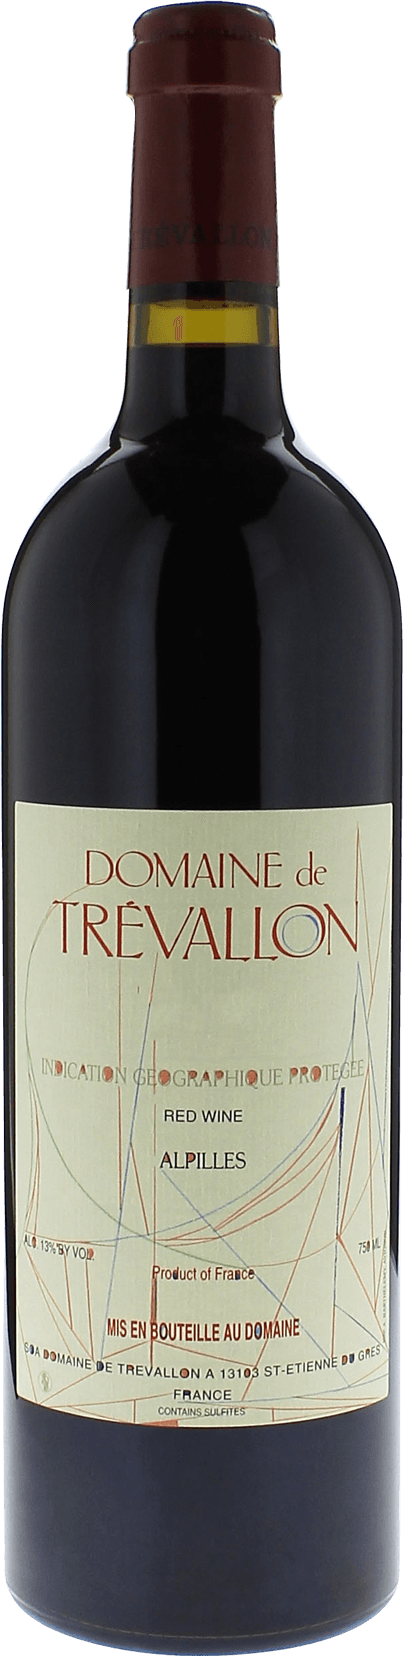 Domaine de trevallon rouge 2019  IGP Alpilles, Provence